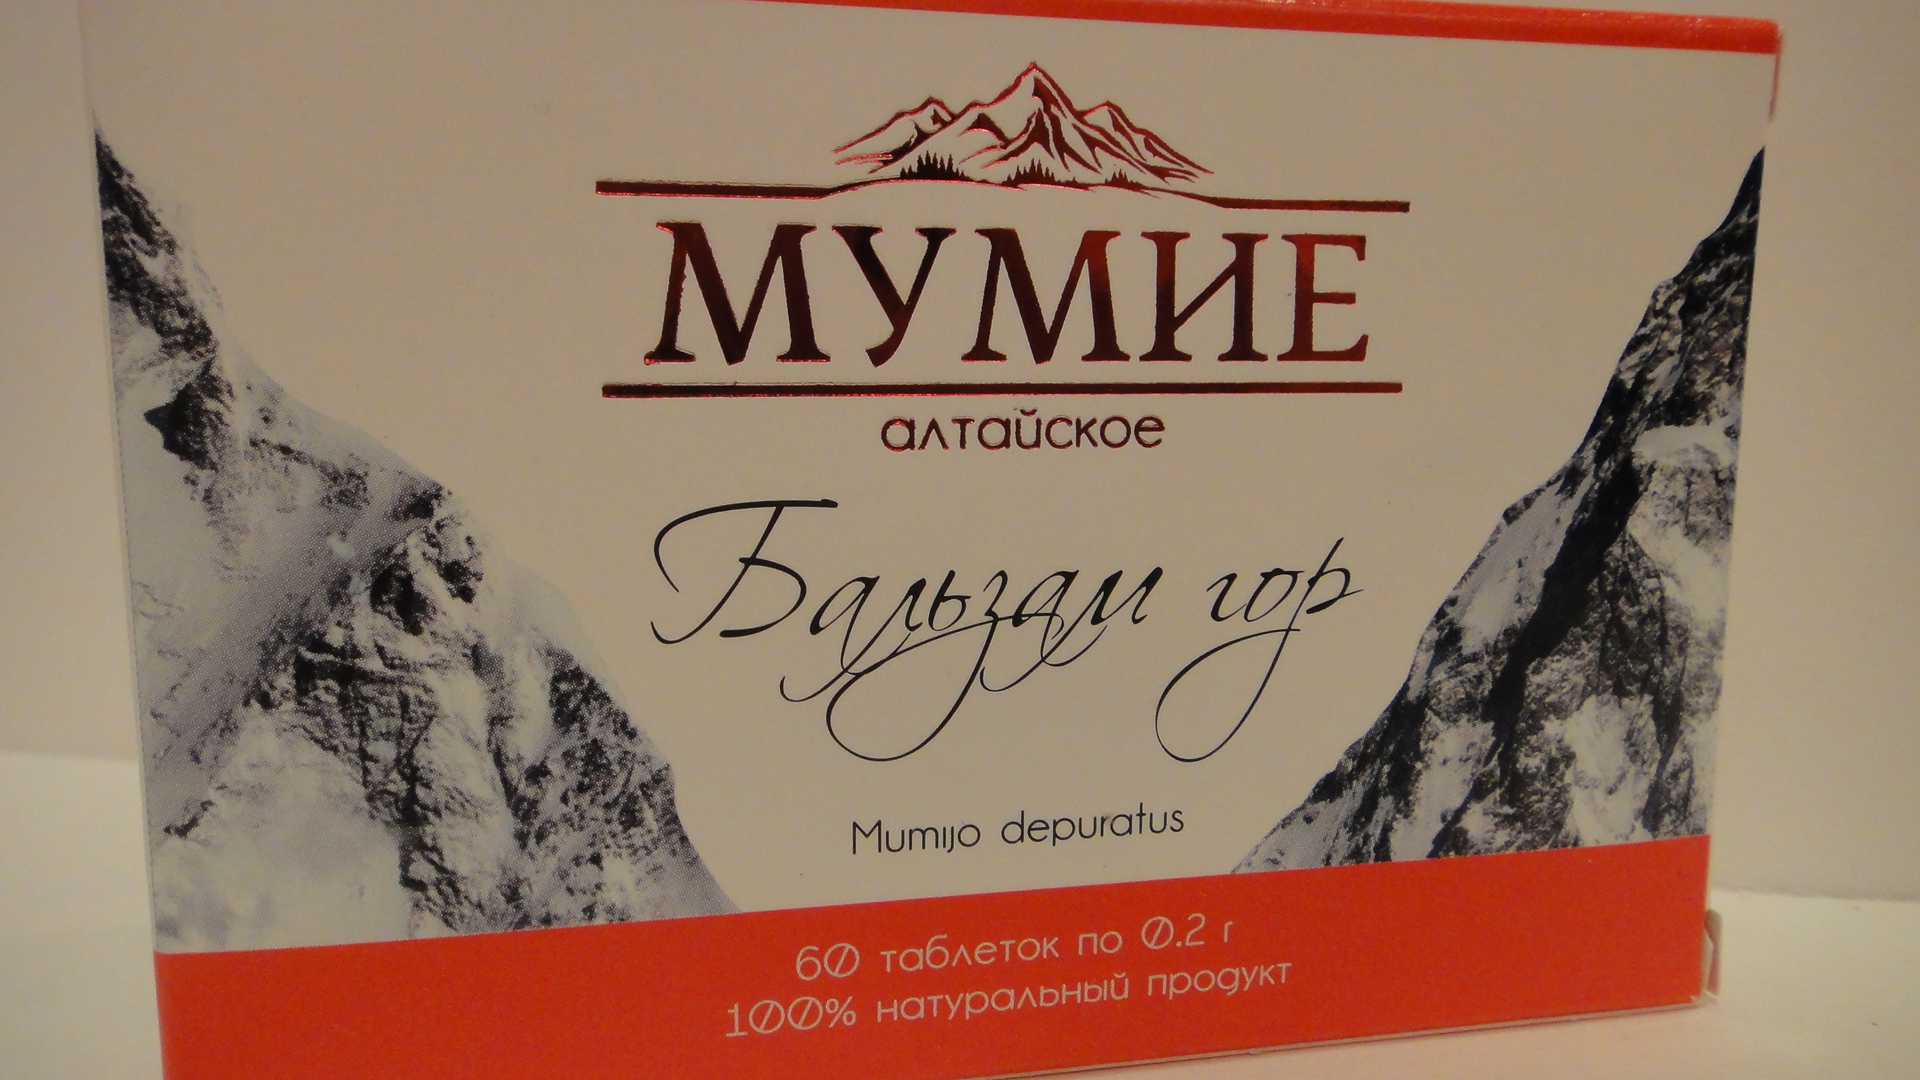 Мумие барнаул купить. Мумиё бальзам гор Mumijo Depuratus. Алтайские горы мумие. Мумиё Алтайское мазь. Мумие в горах.